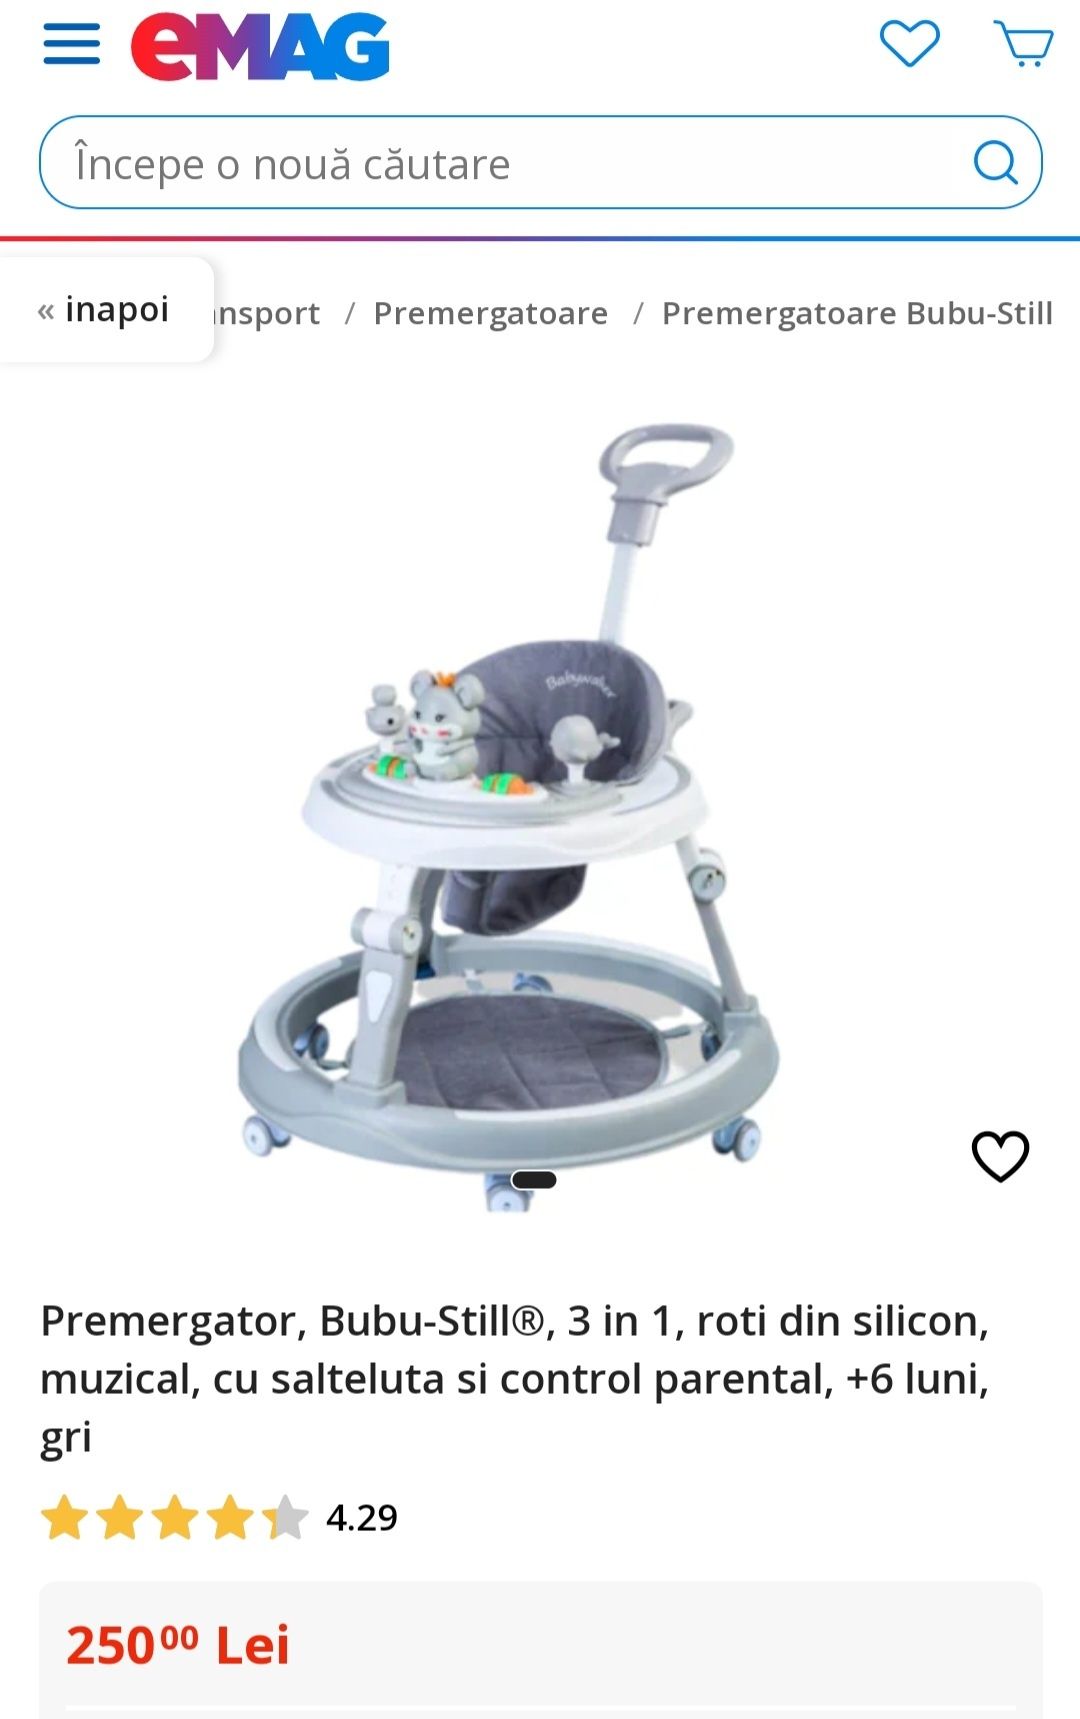 Premergator, Bubu-Still®, 3 in 1, roti din silicon, muzical